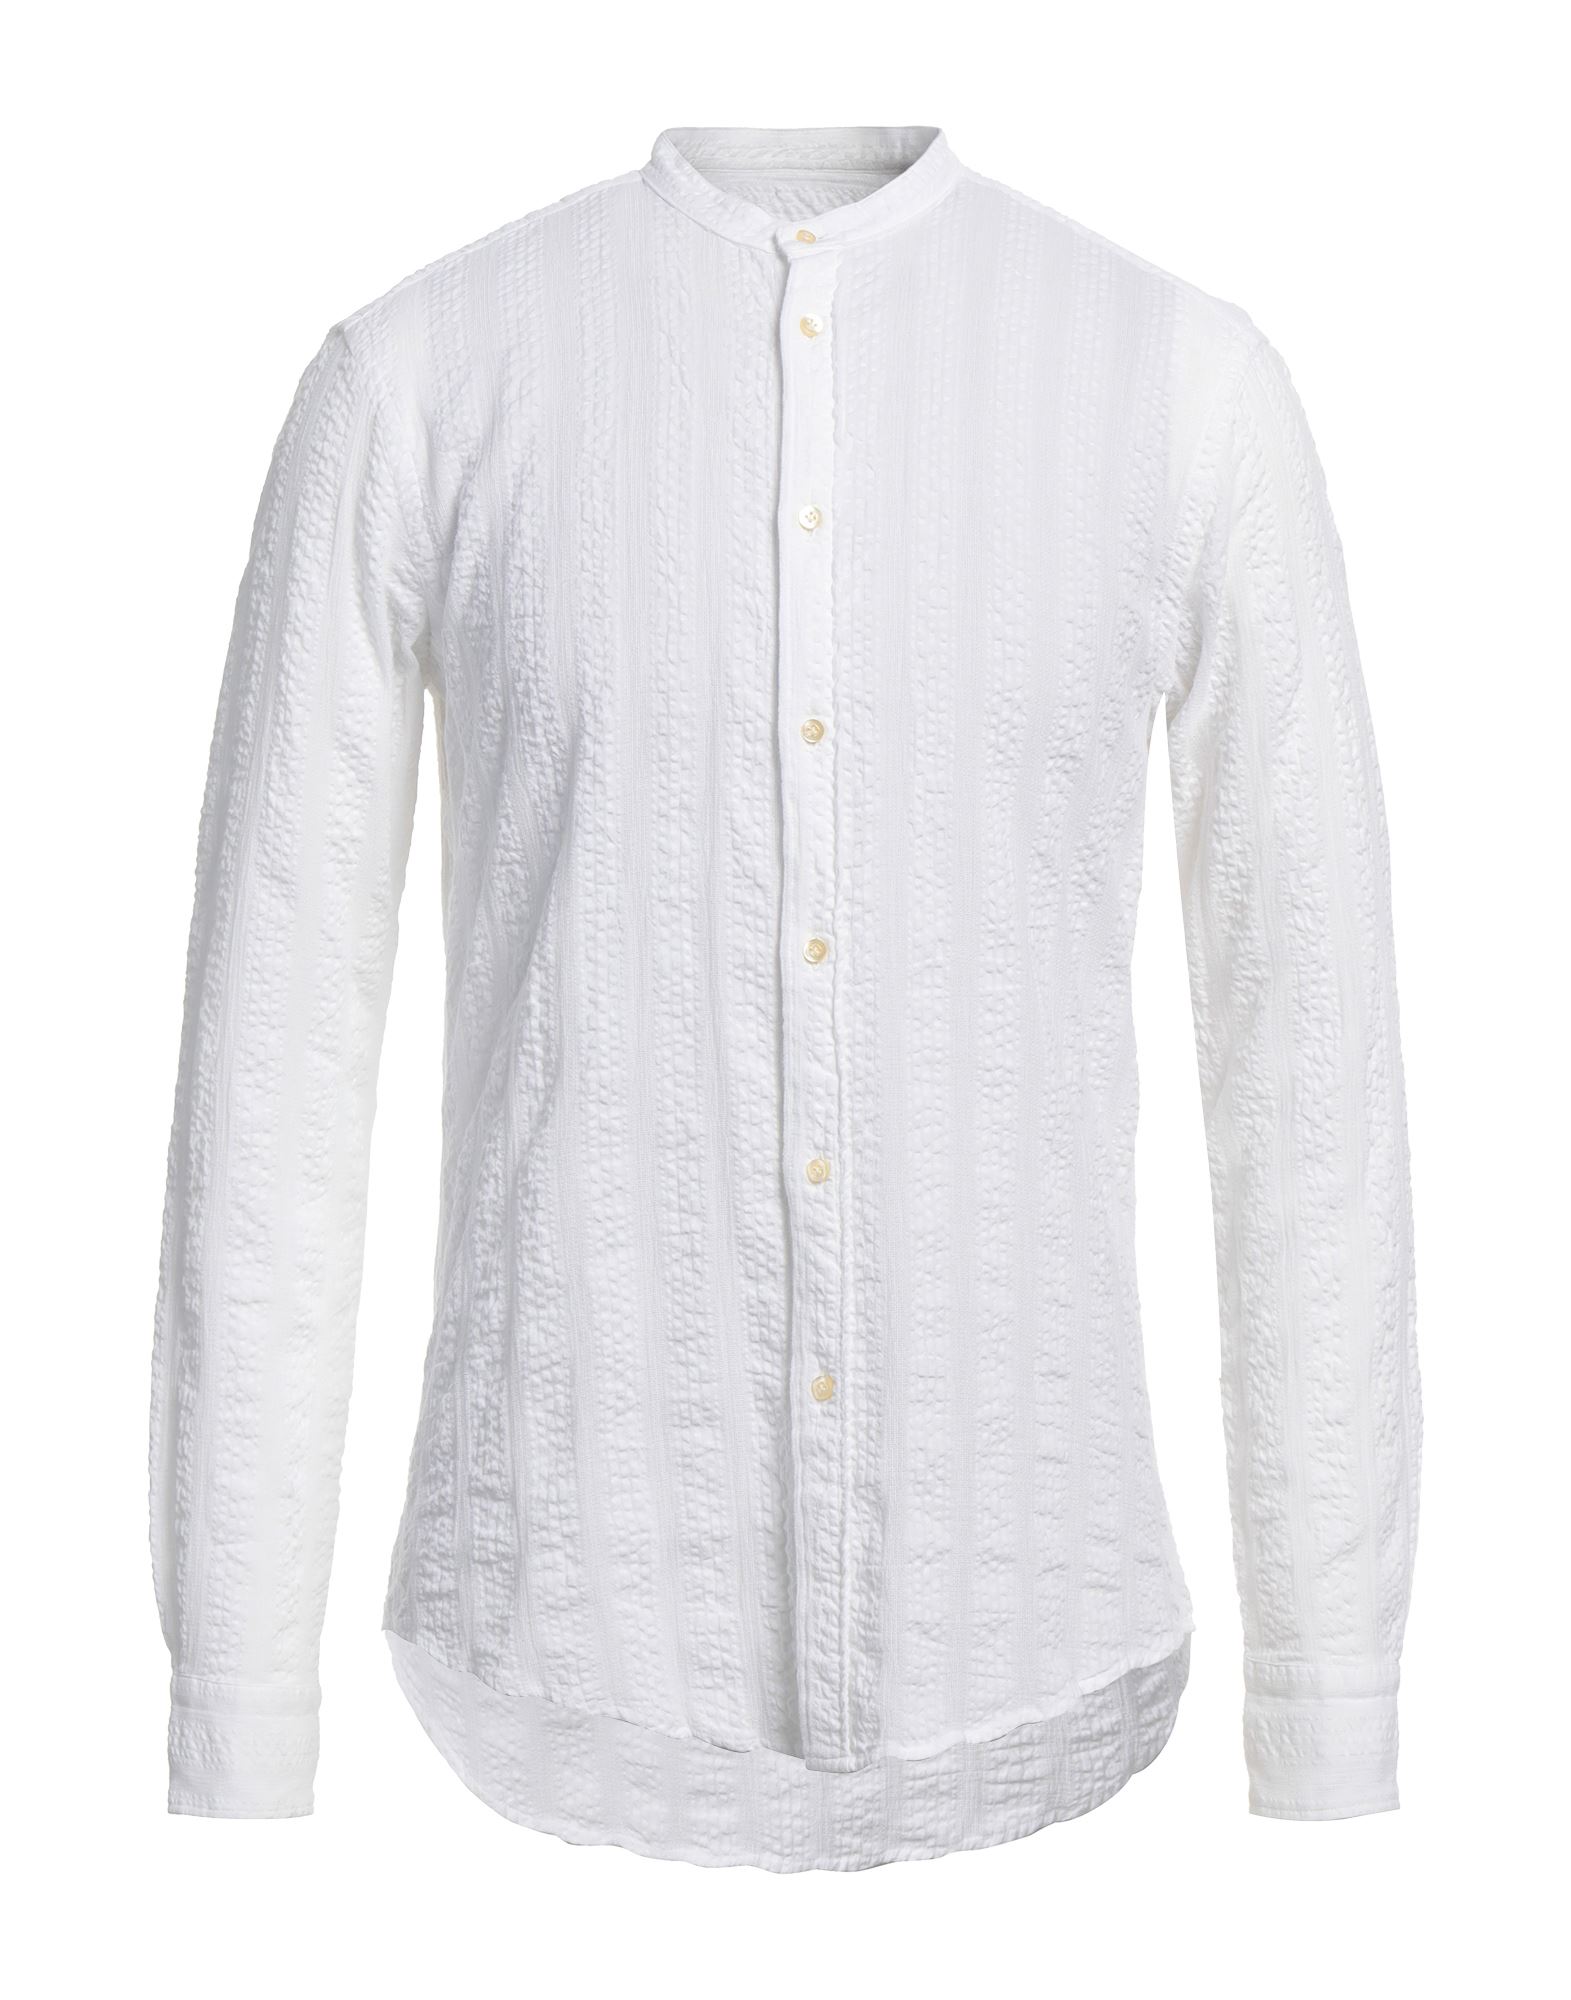 Brian Dales Man Shirt White Size 17 Cotton